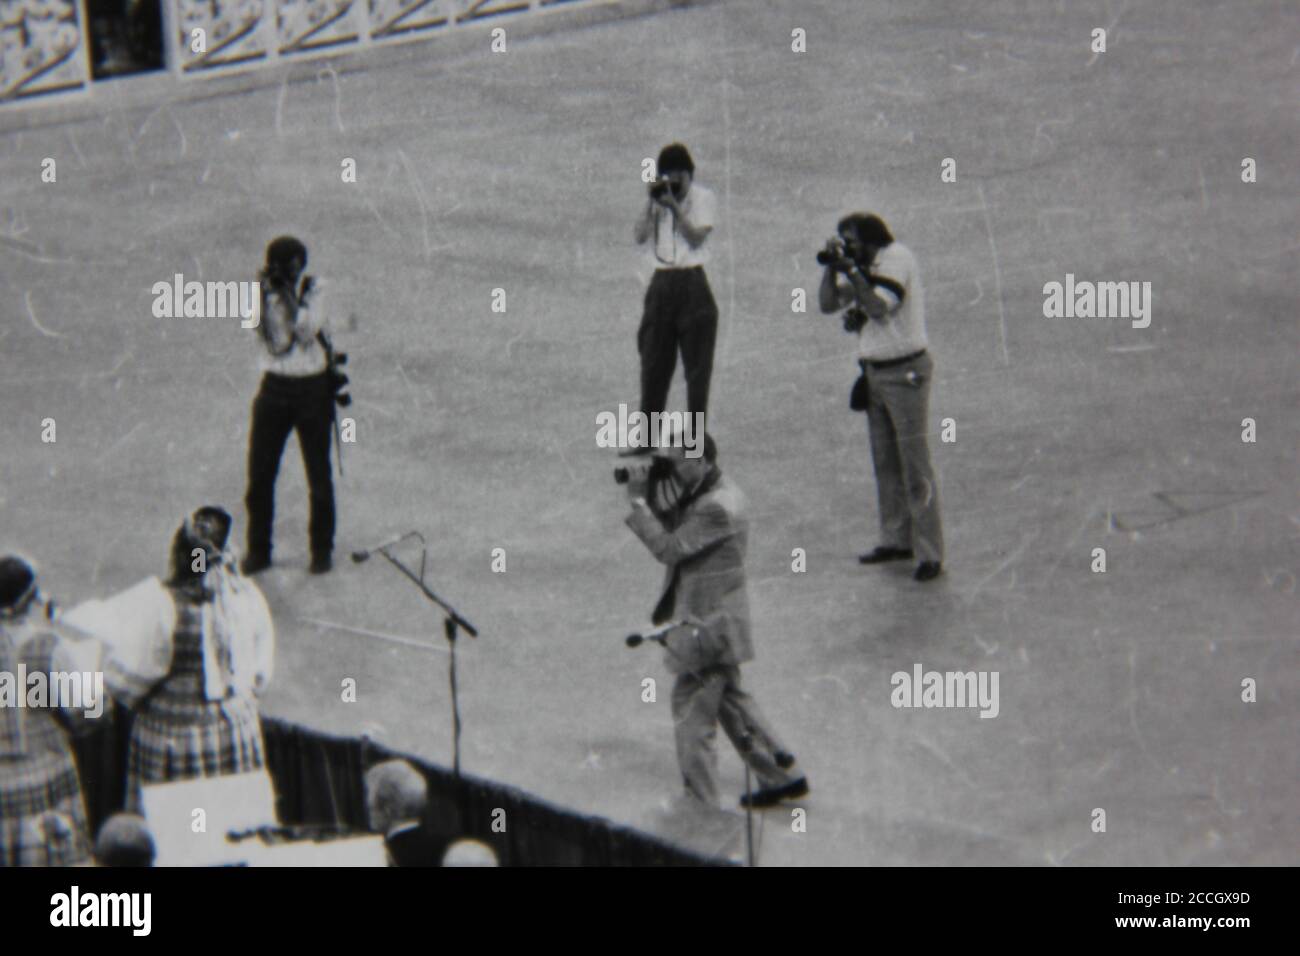 Feine 70er Jahre Vintage Schwarz-Weiß-Fotografie von einer Reihe von Fotografen, die Bilder von Würdenträgern. Stockfoto